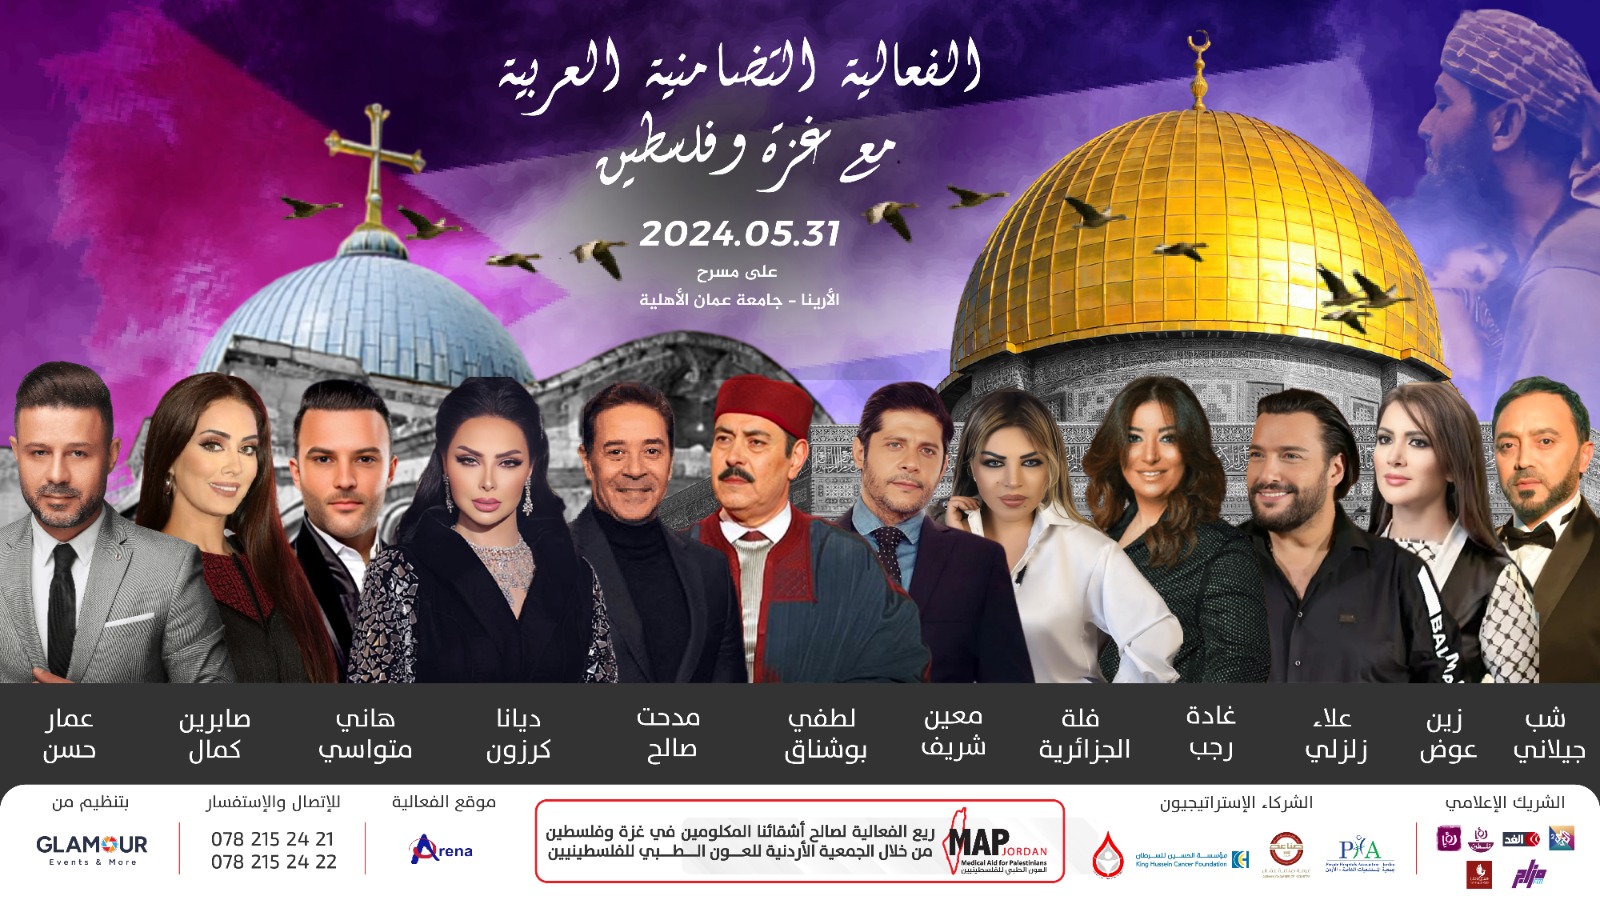 "فلسطين في وجدان الهاشميين":فعالية وطنية بمشاركة النجوم العرب على مسرح الارينا.